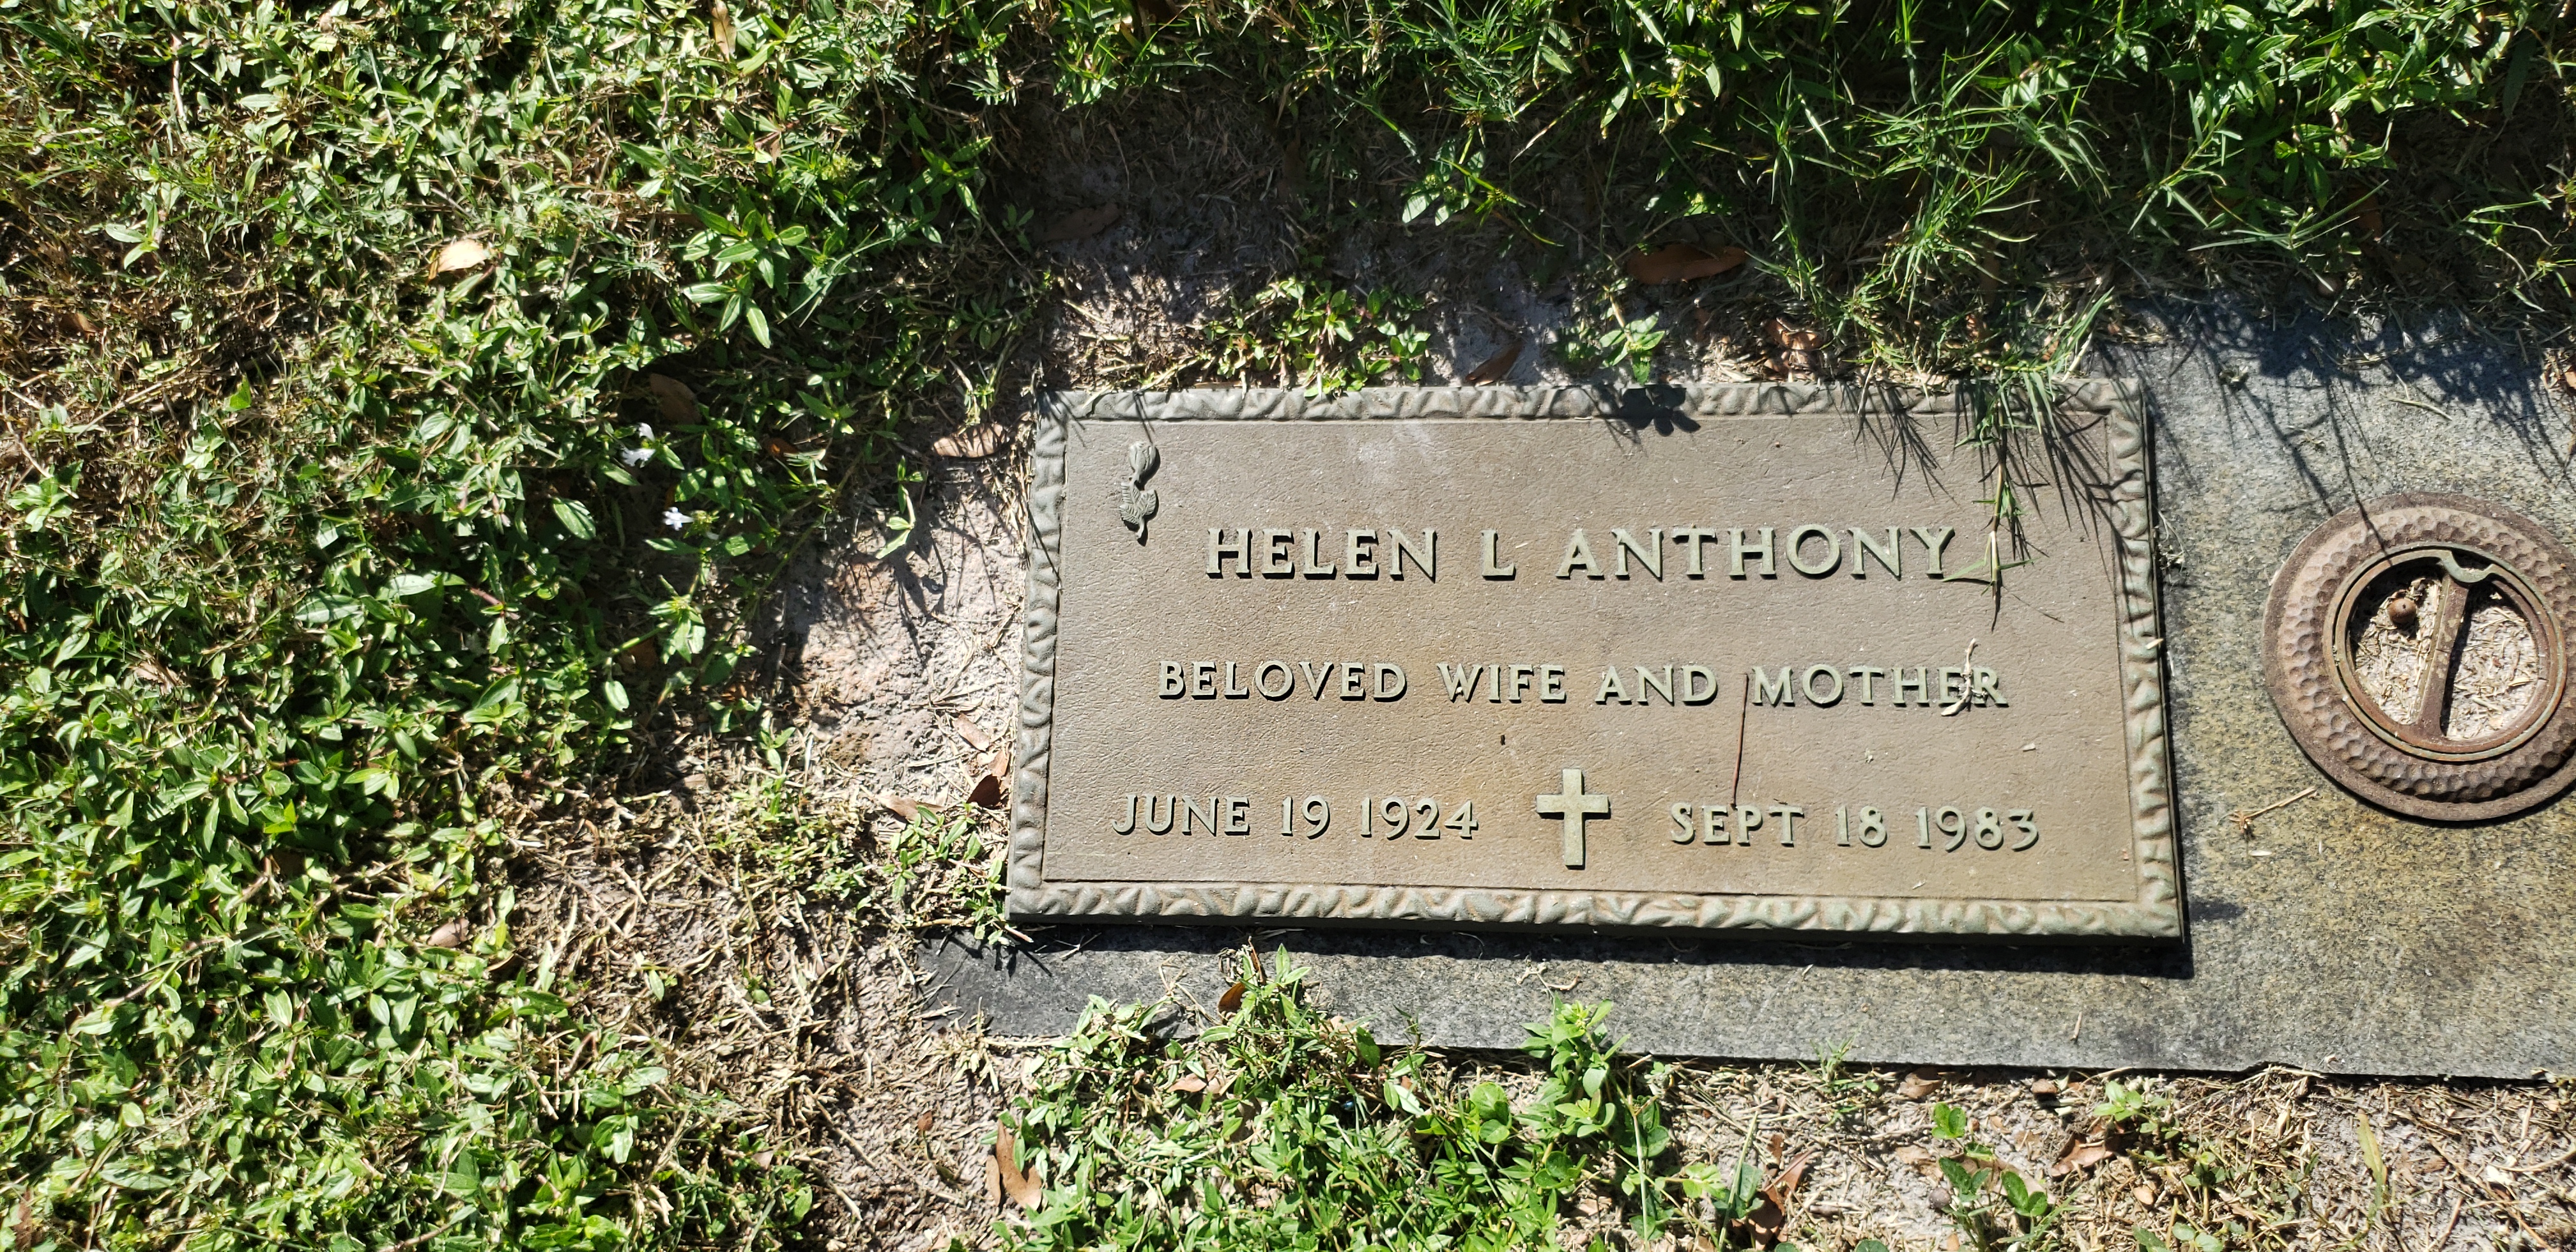 Helen L Anthony